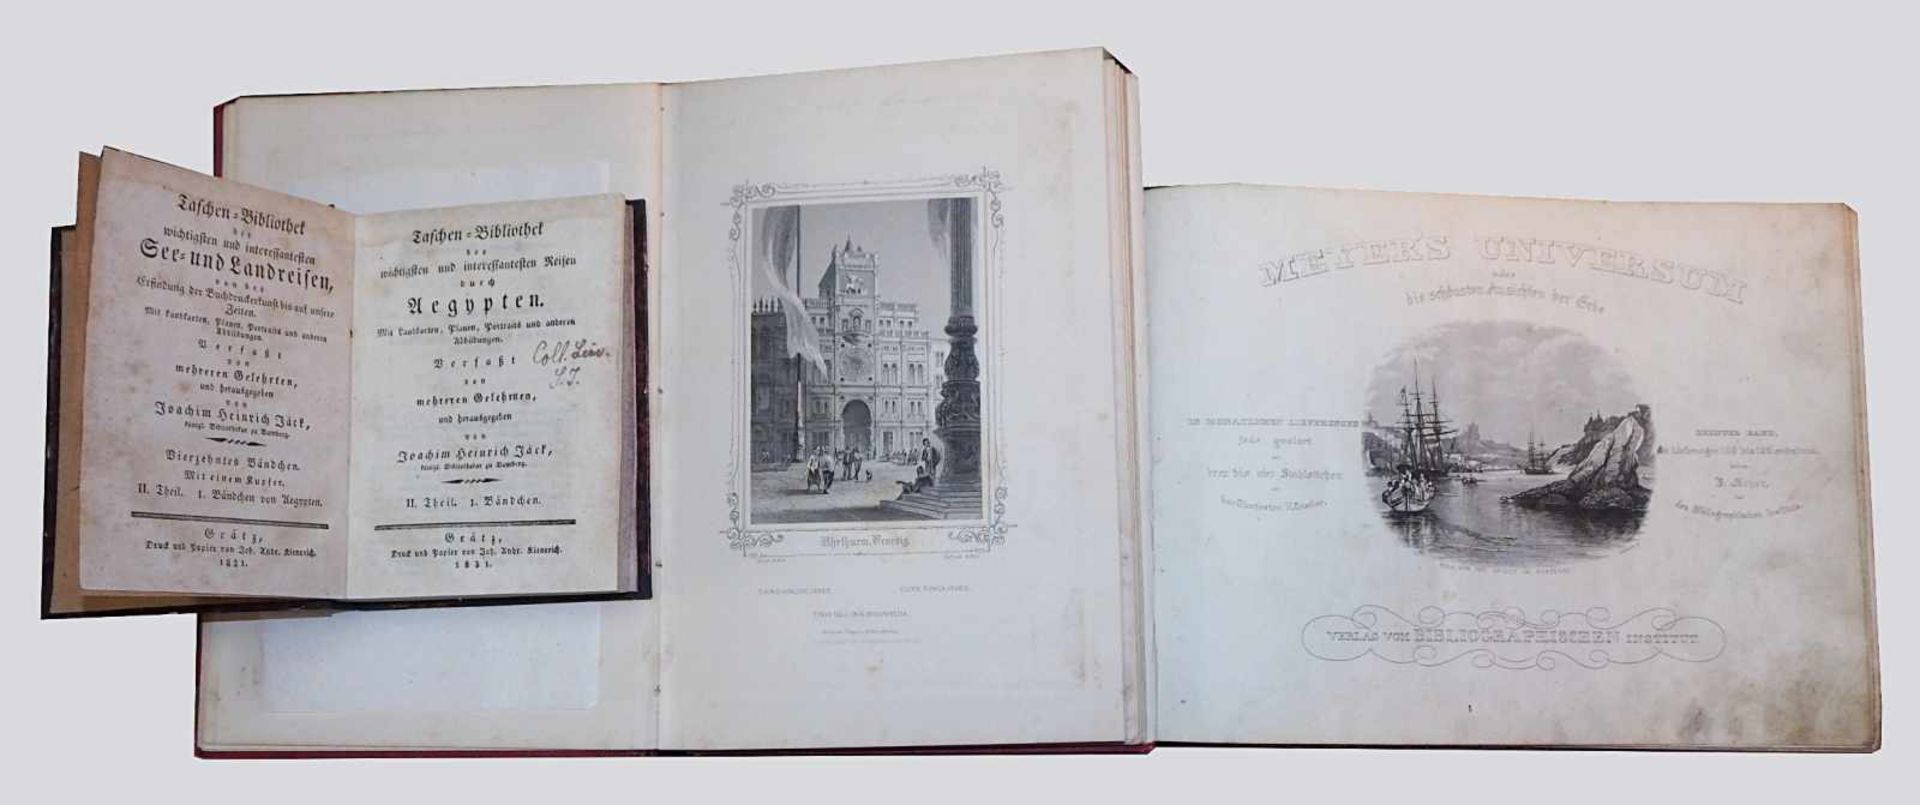 1 Buch "Aegypten" hg. v. Joachim Heinrich JÄCK, Grätz 18311 Buch "Venedig-24 Ansichten" München 1846